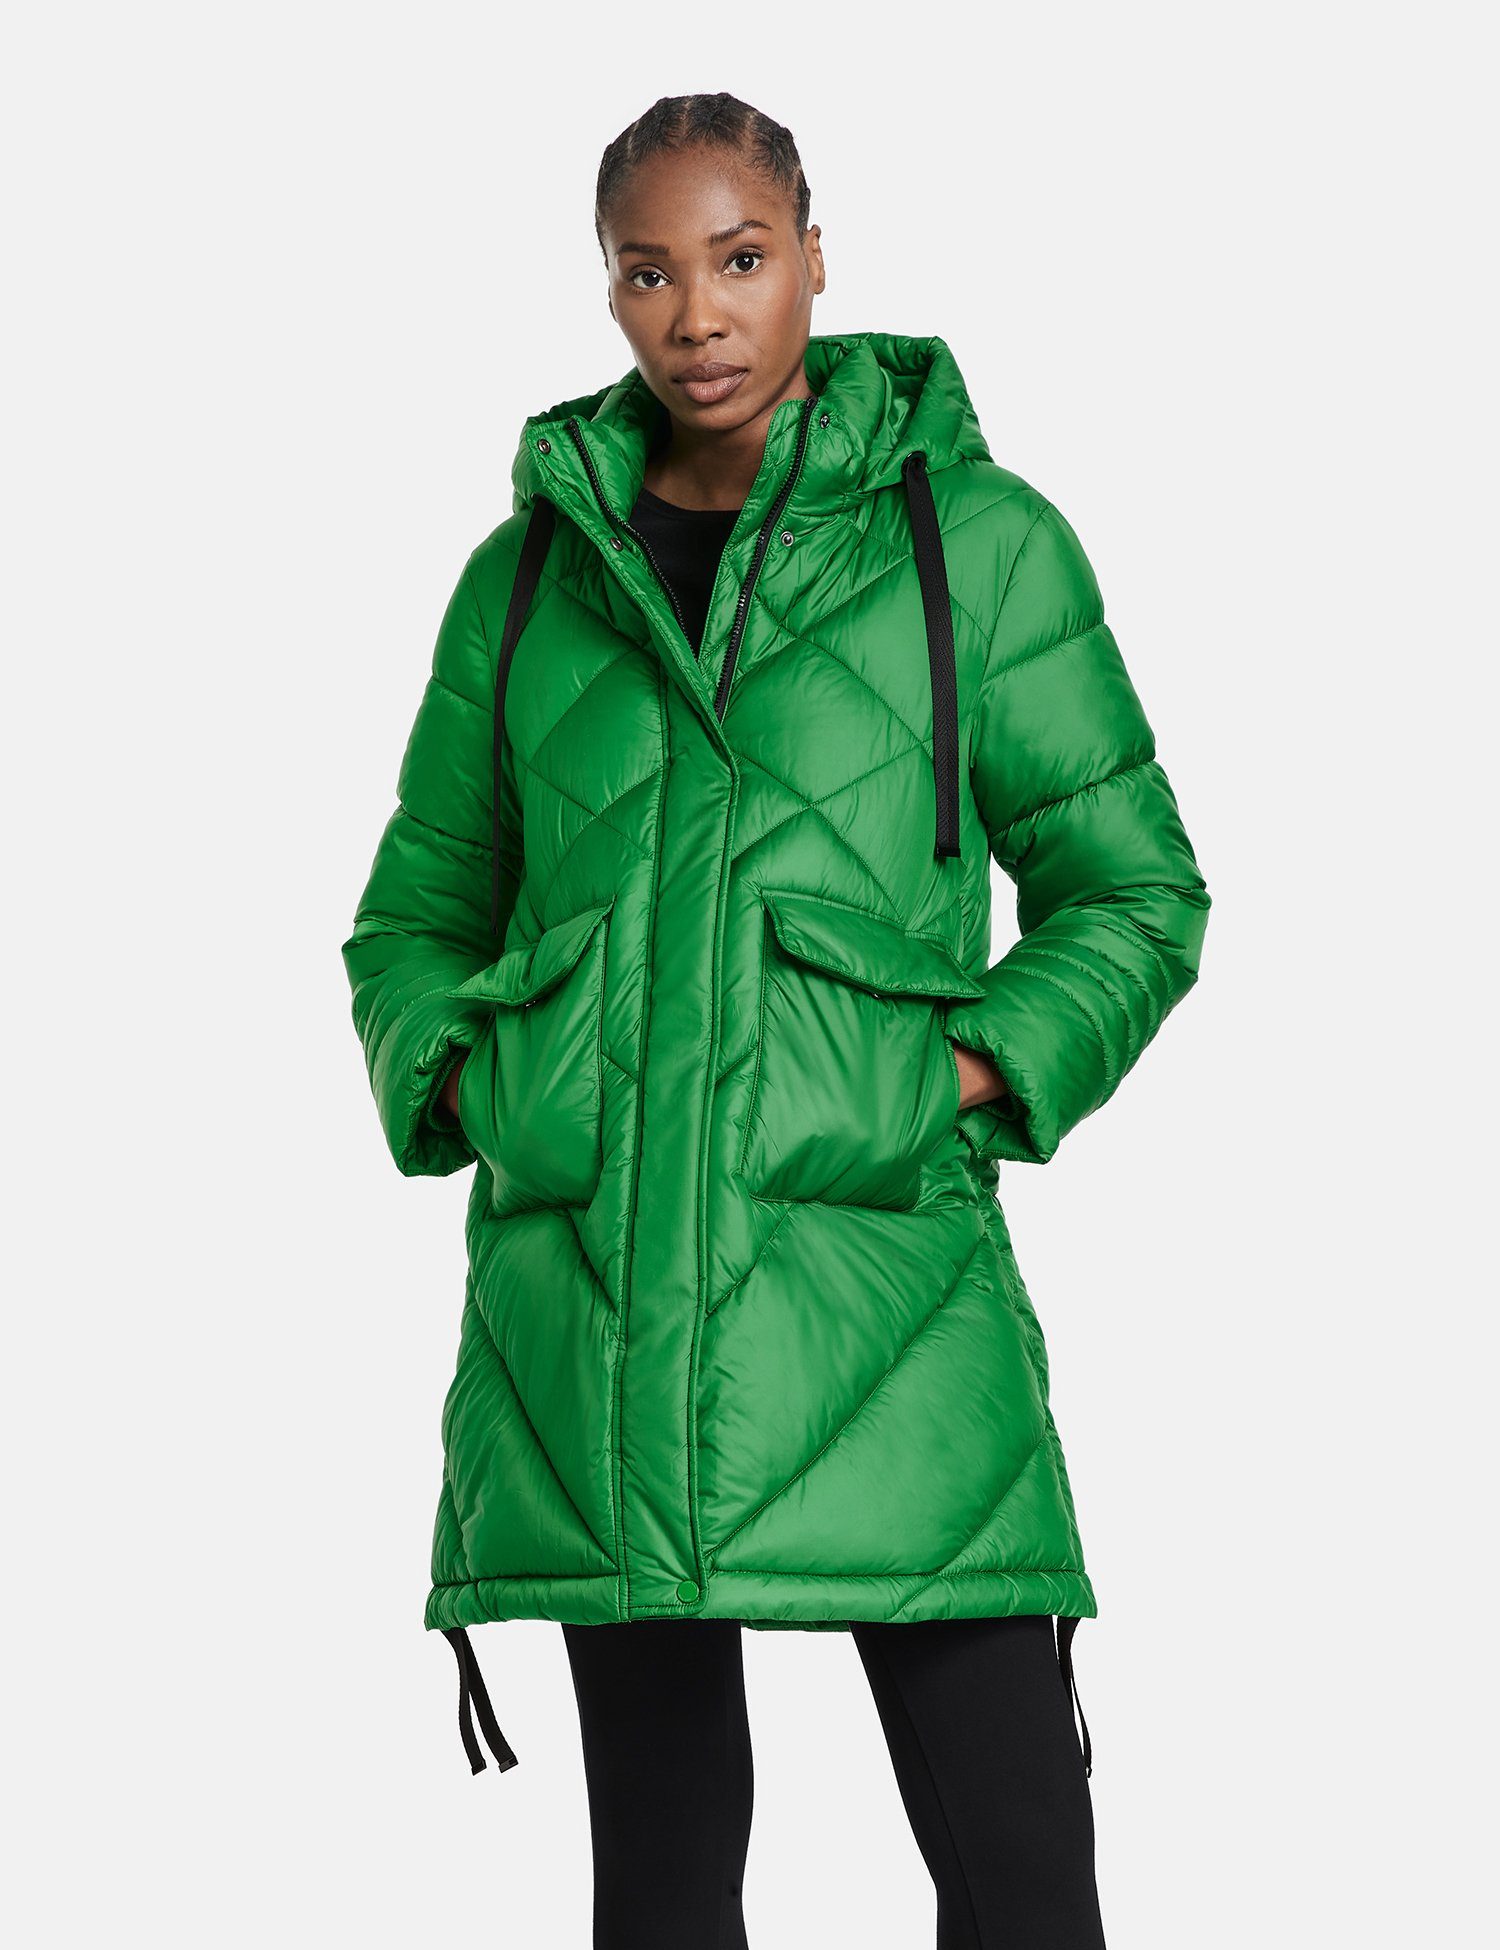 GERRY aufgesetzten Green großen Bright mit WEBER Taschen Wintermantel Mantel Modischer